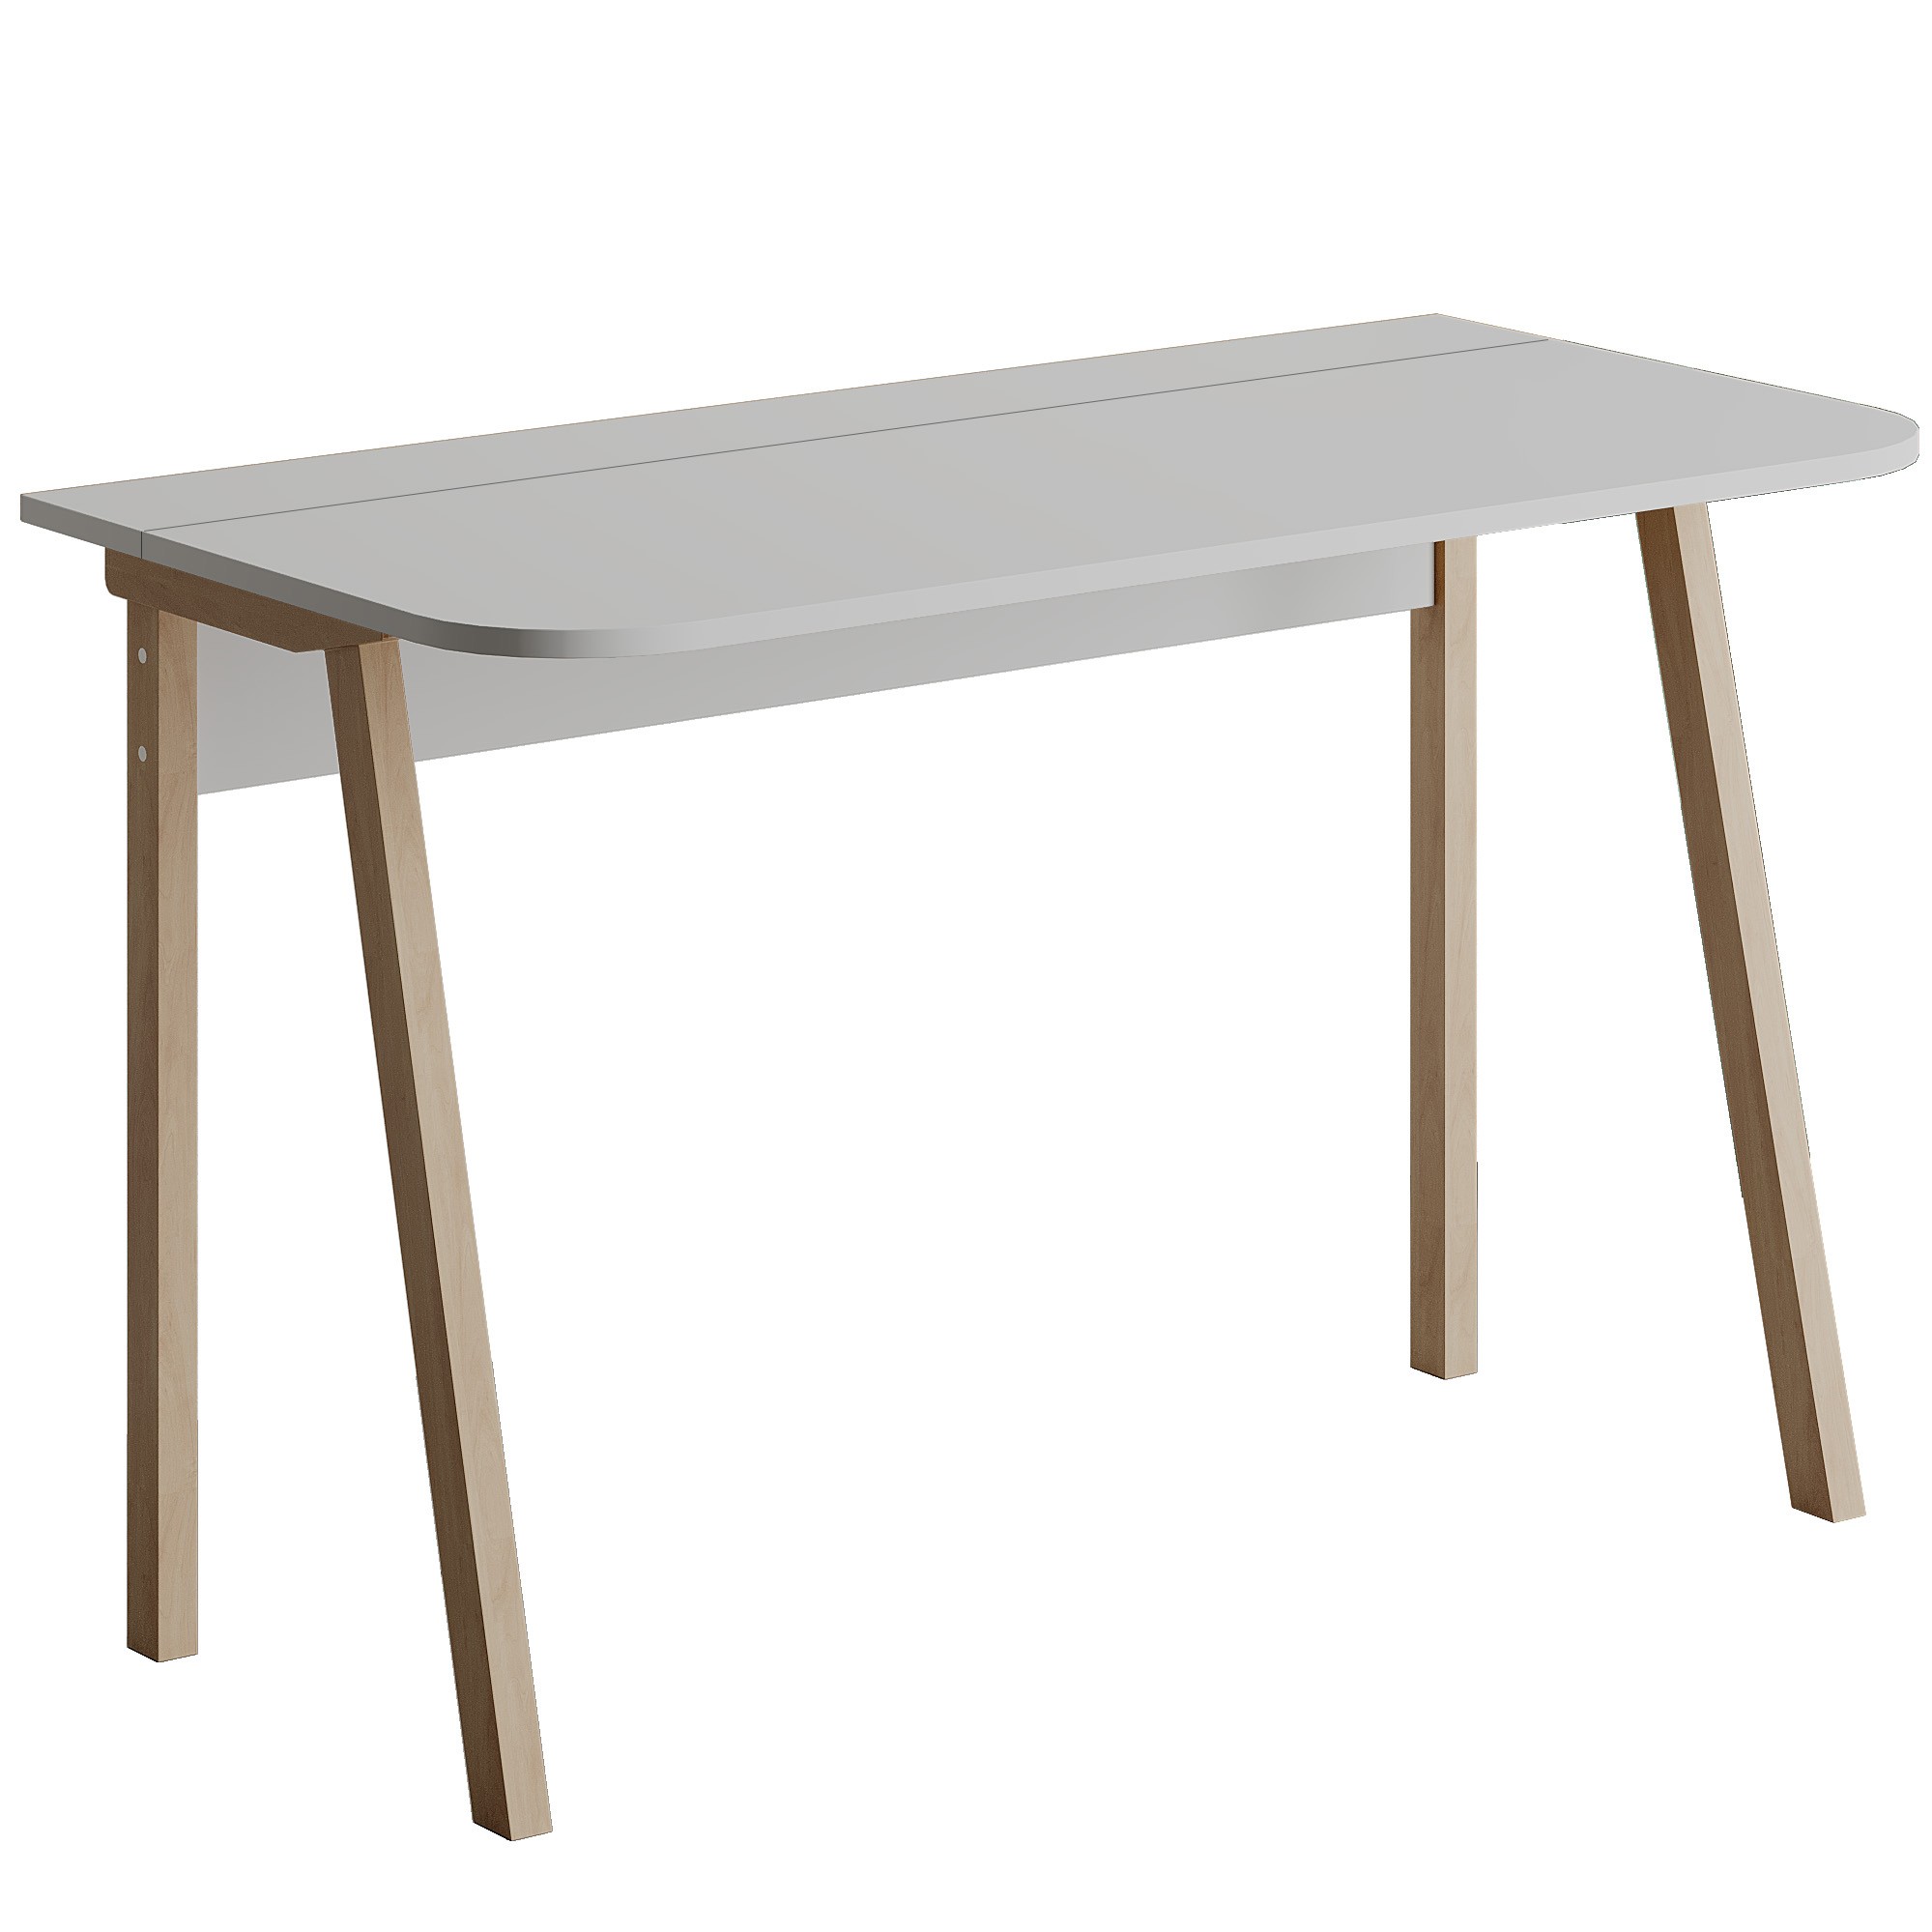 Luton Working Table White - White